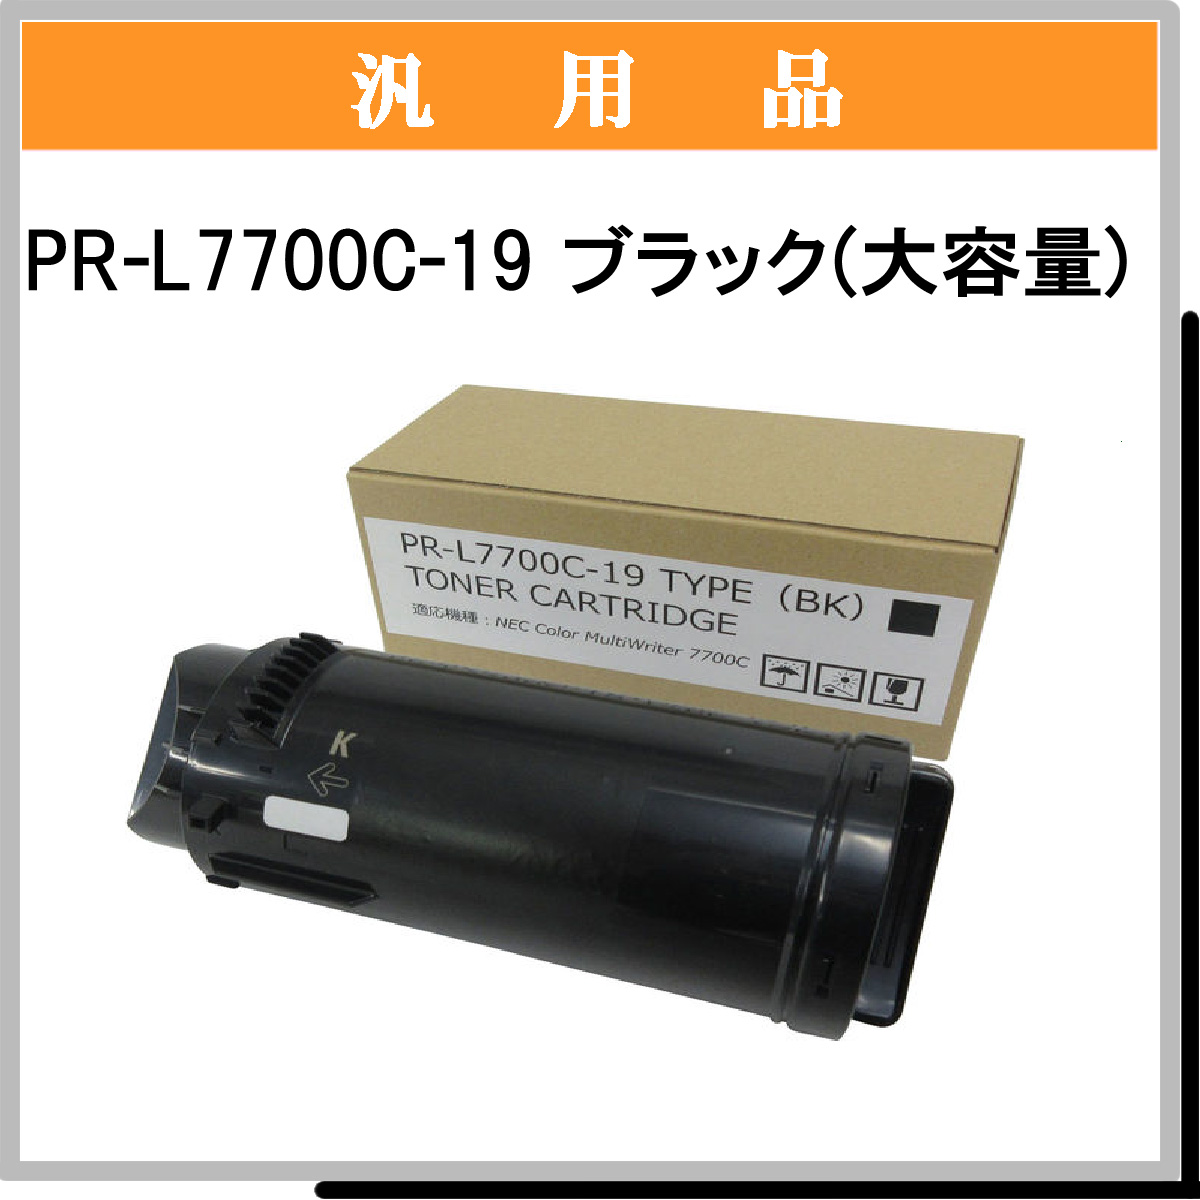 PR-L7700C-19 (大容量) 汎用